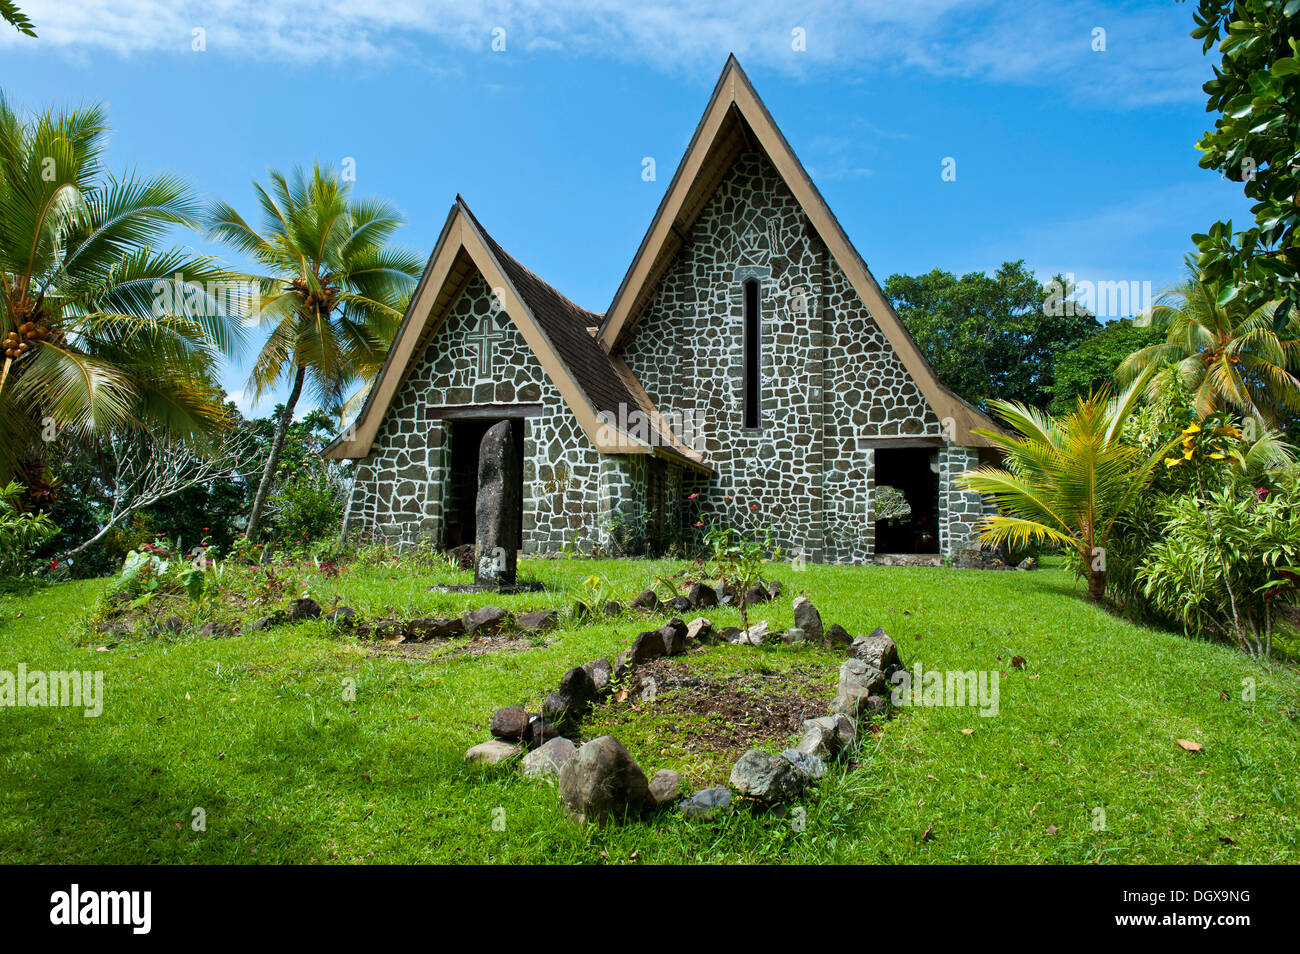 Stone church, Insel Kvato, Alotau, Papua New Guinea Stock Photo